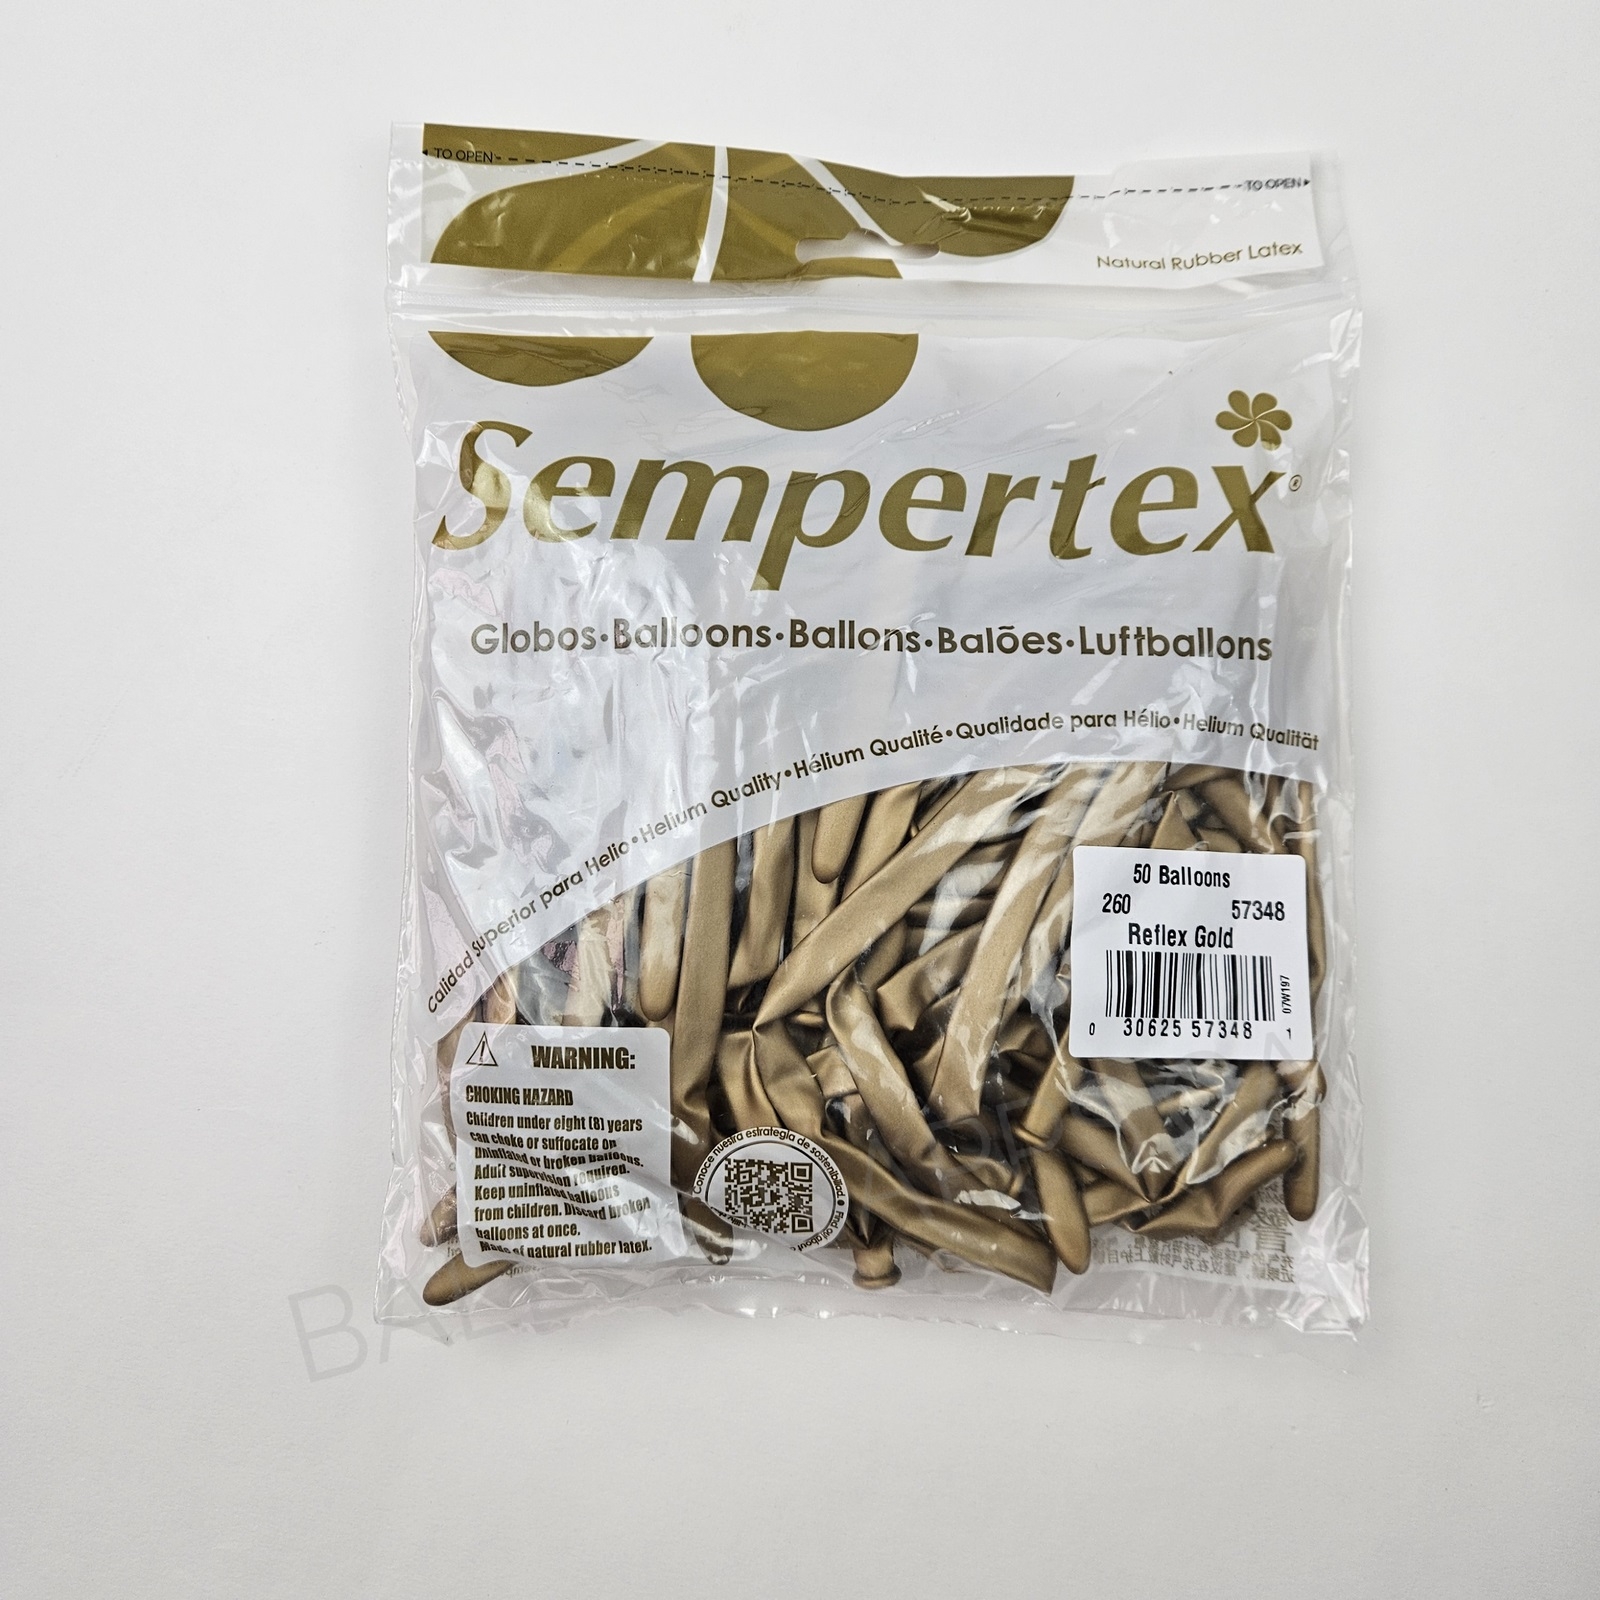 Sempertex 260 Reflex Gold